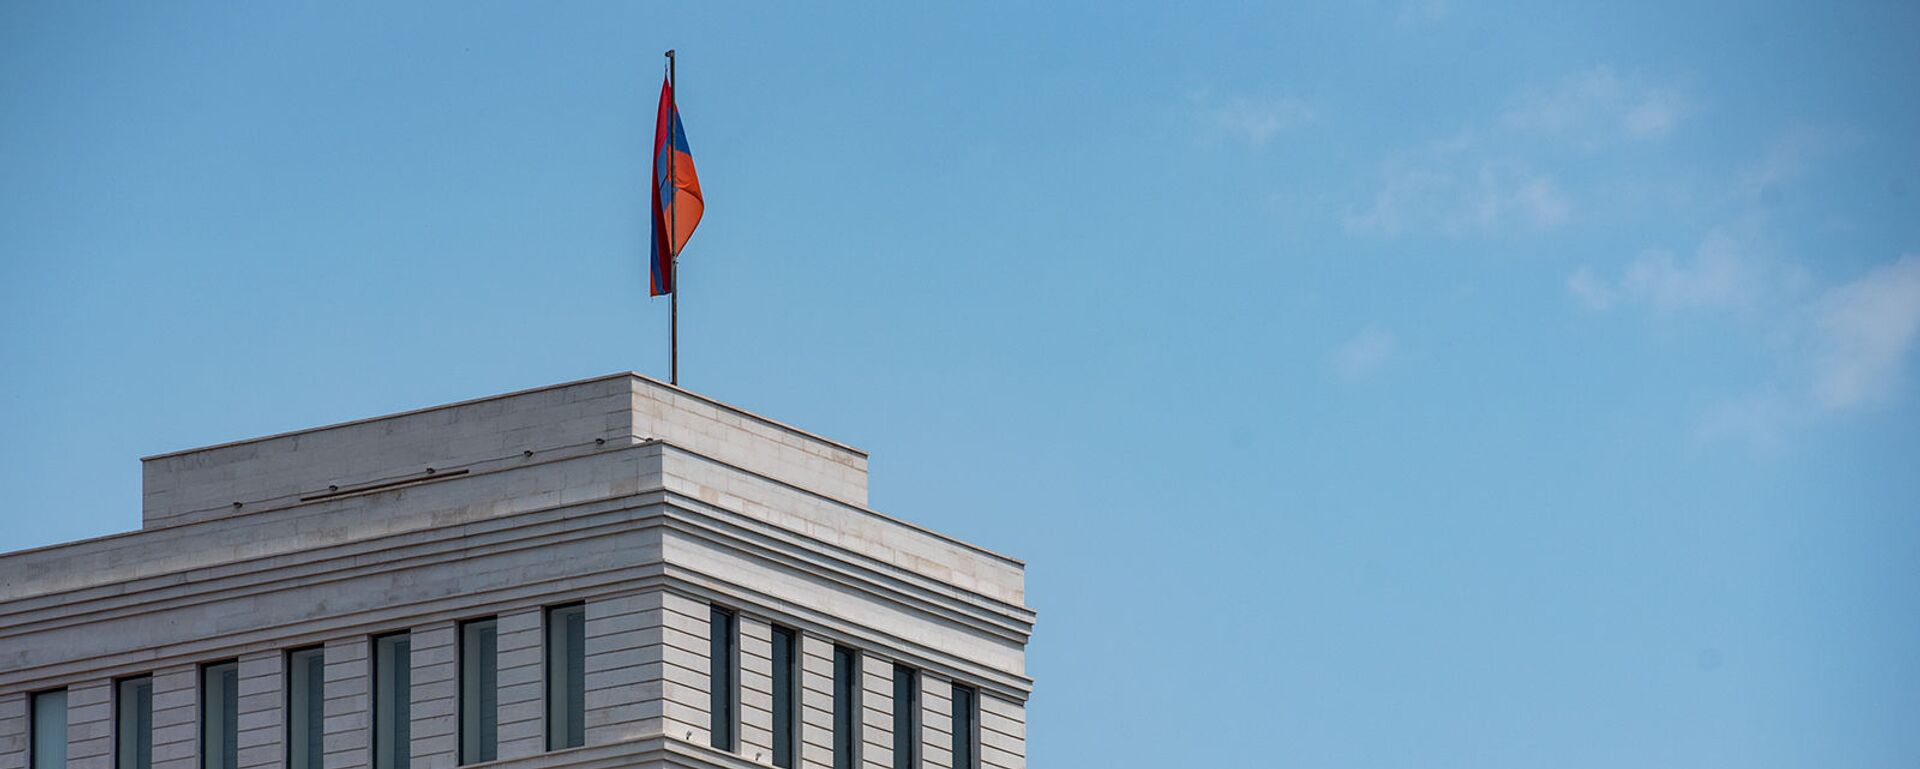 Здание Министерства иностранных дел Армении - Sputnik Армения, 1920, 27.02.2021